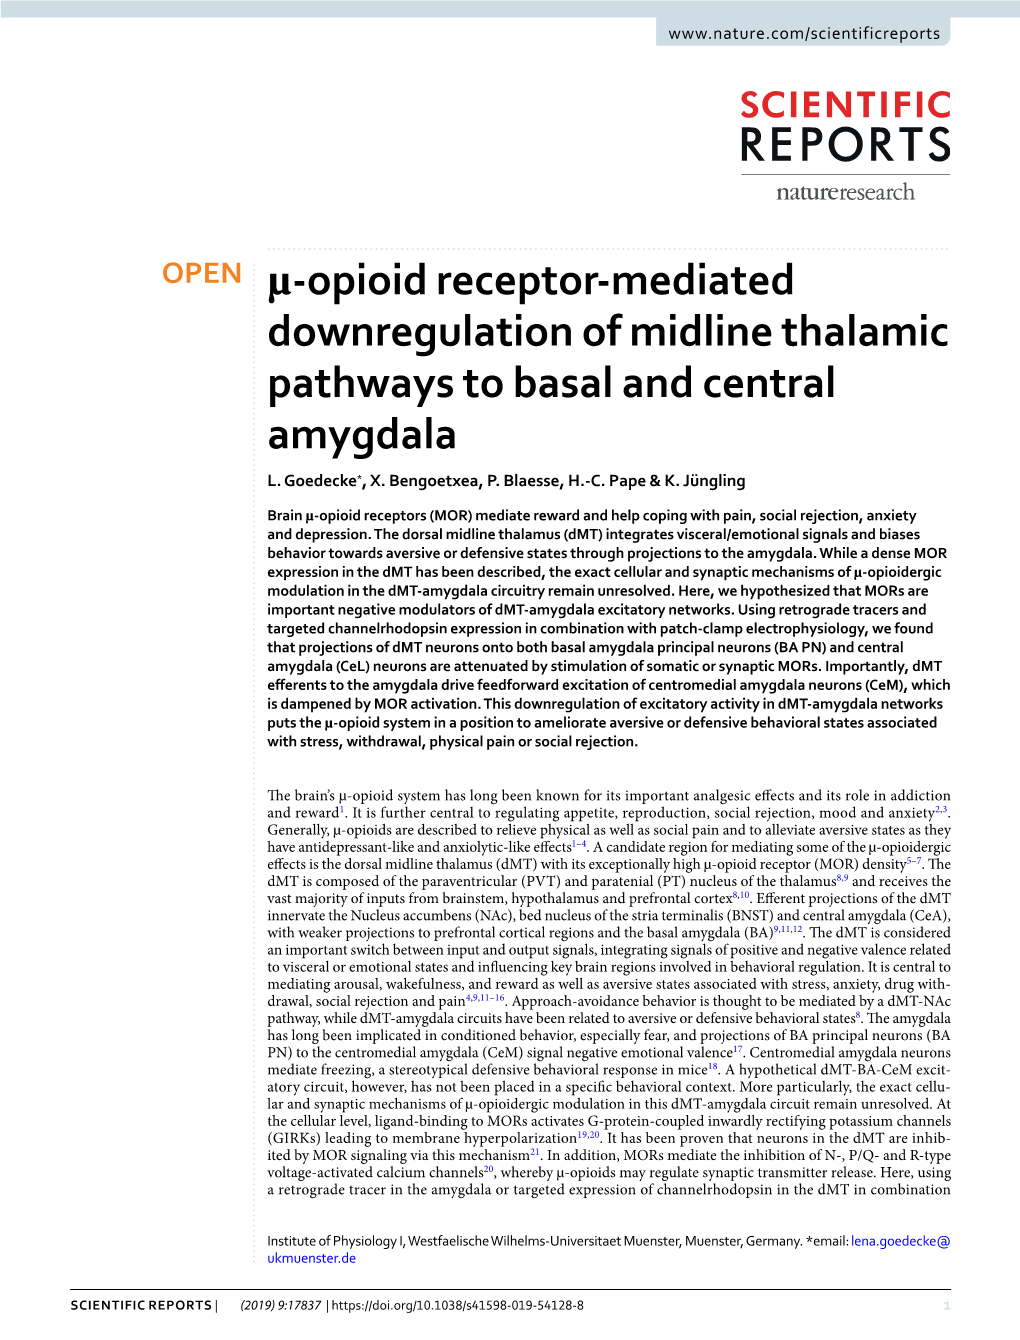 Μ-Opioid Receptor-Mediated Downregulation of Midline Thalamic Pathways to Basal and Central Amygdala L